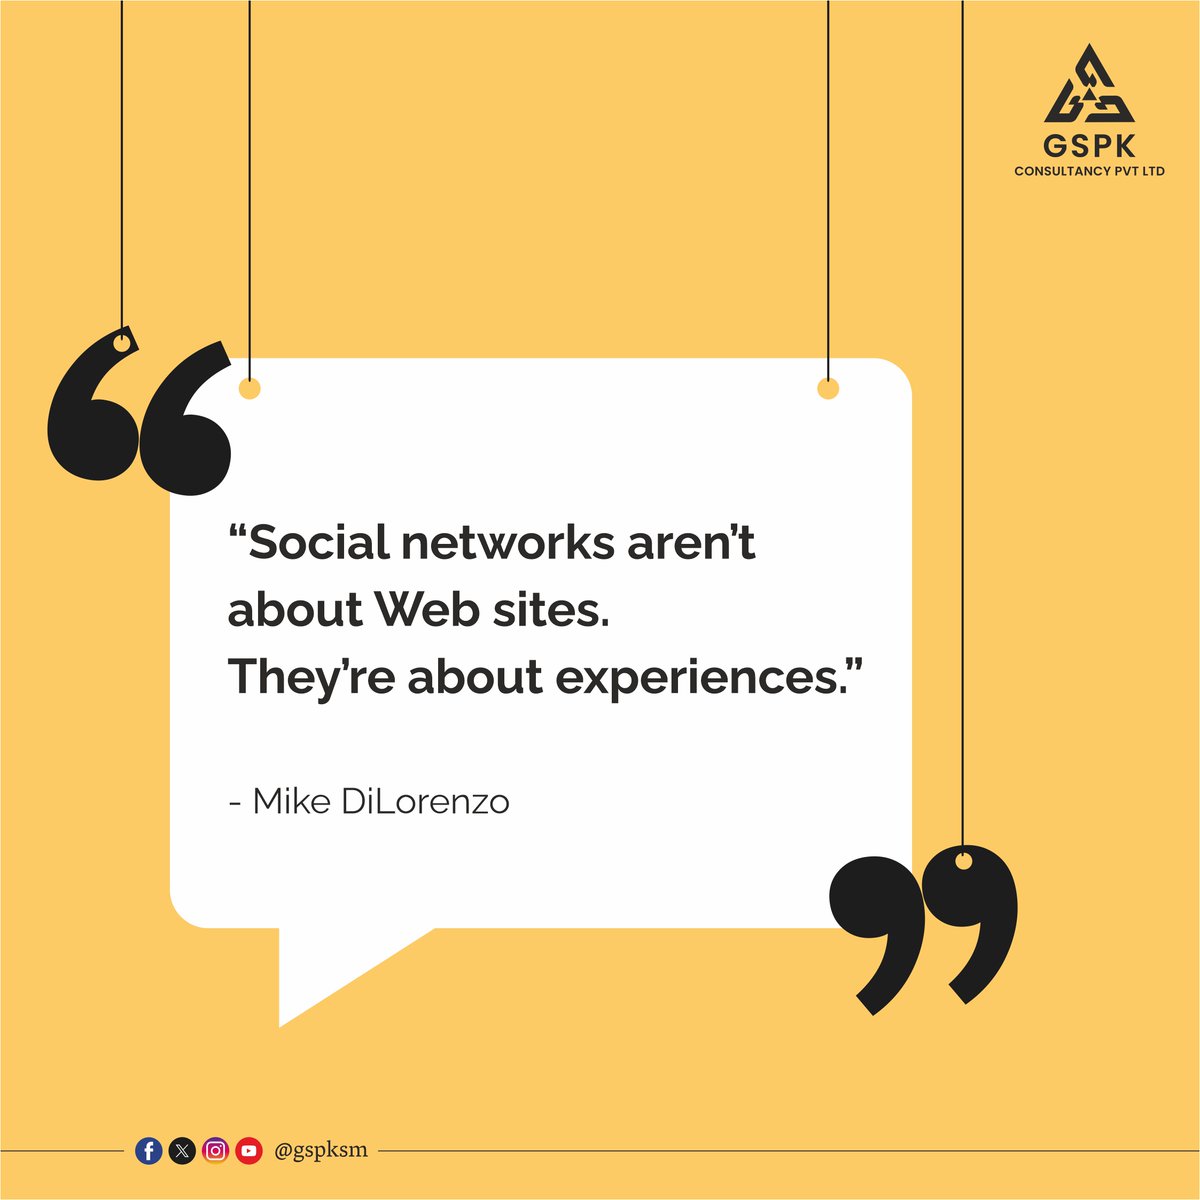 Quote
#GSPK #GspkConsultancy #socialmediaagency #digitalmarketing #digitalmedia #socialmediamarketing #socialmediastrategy